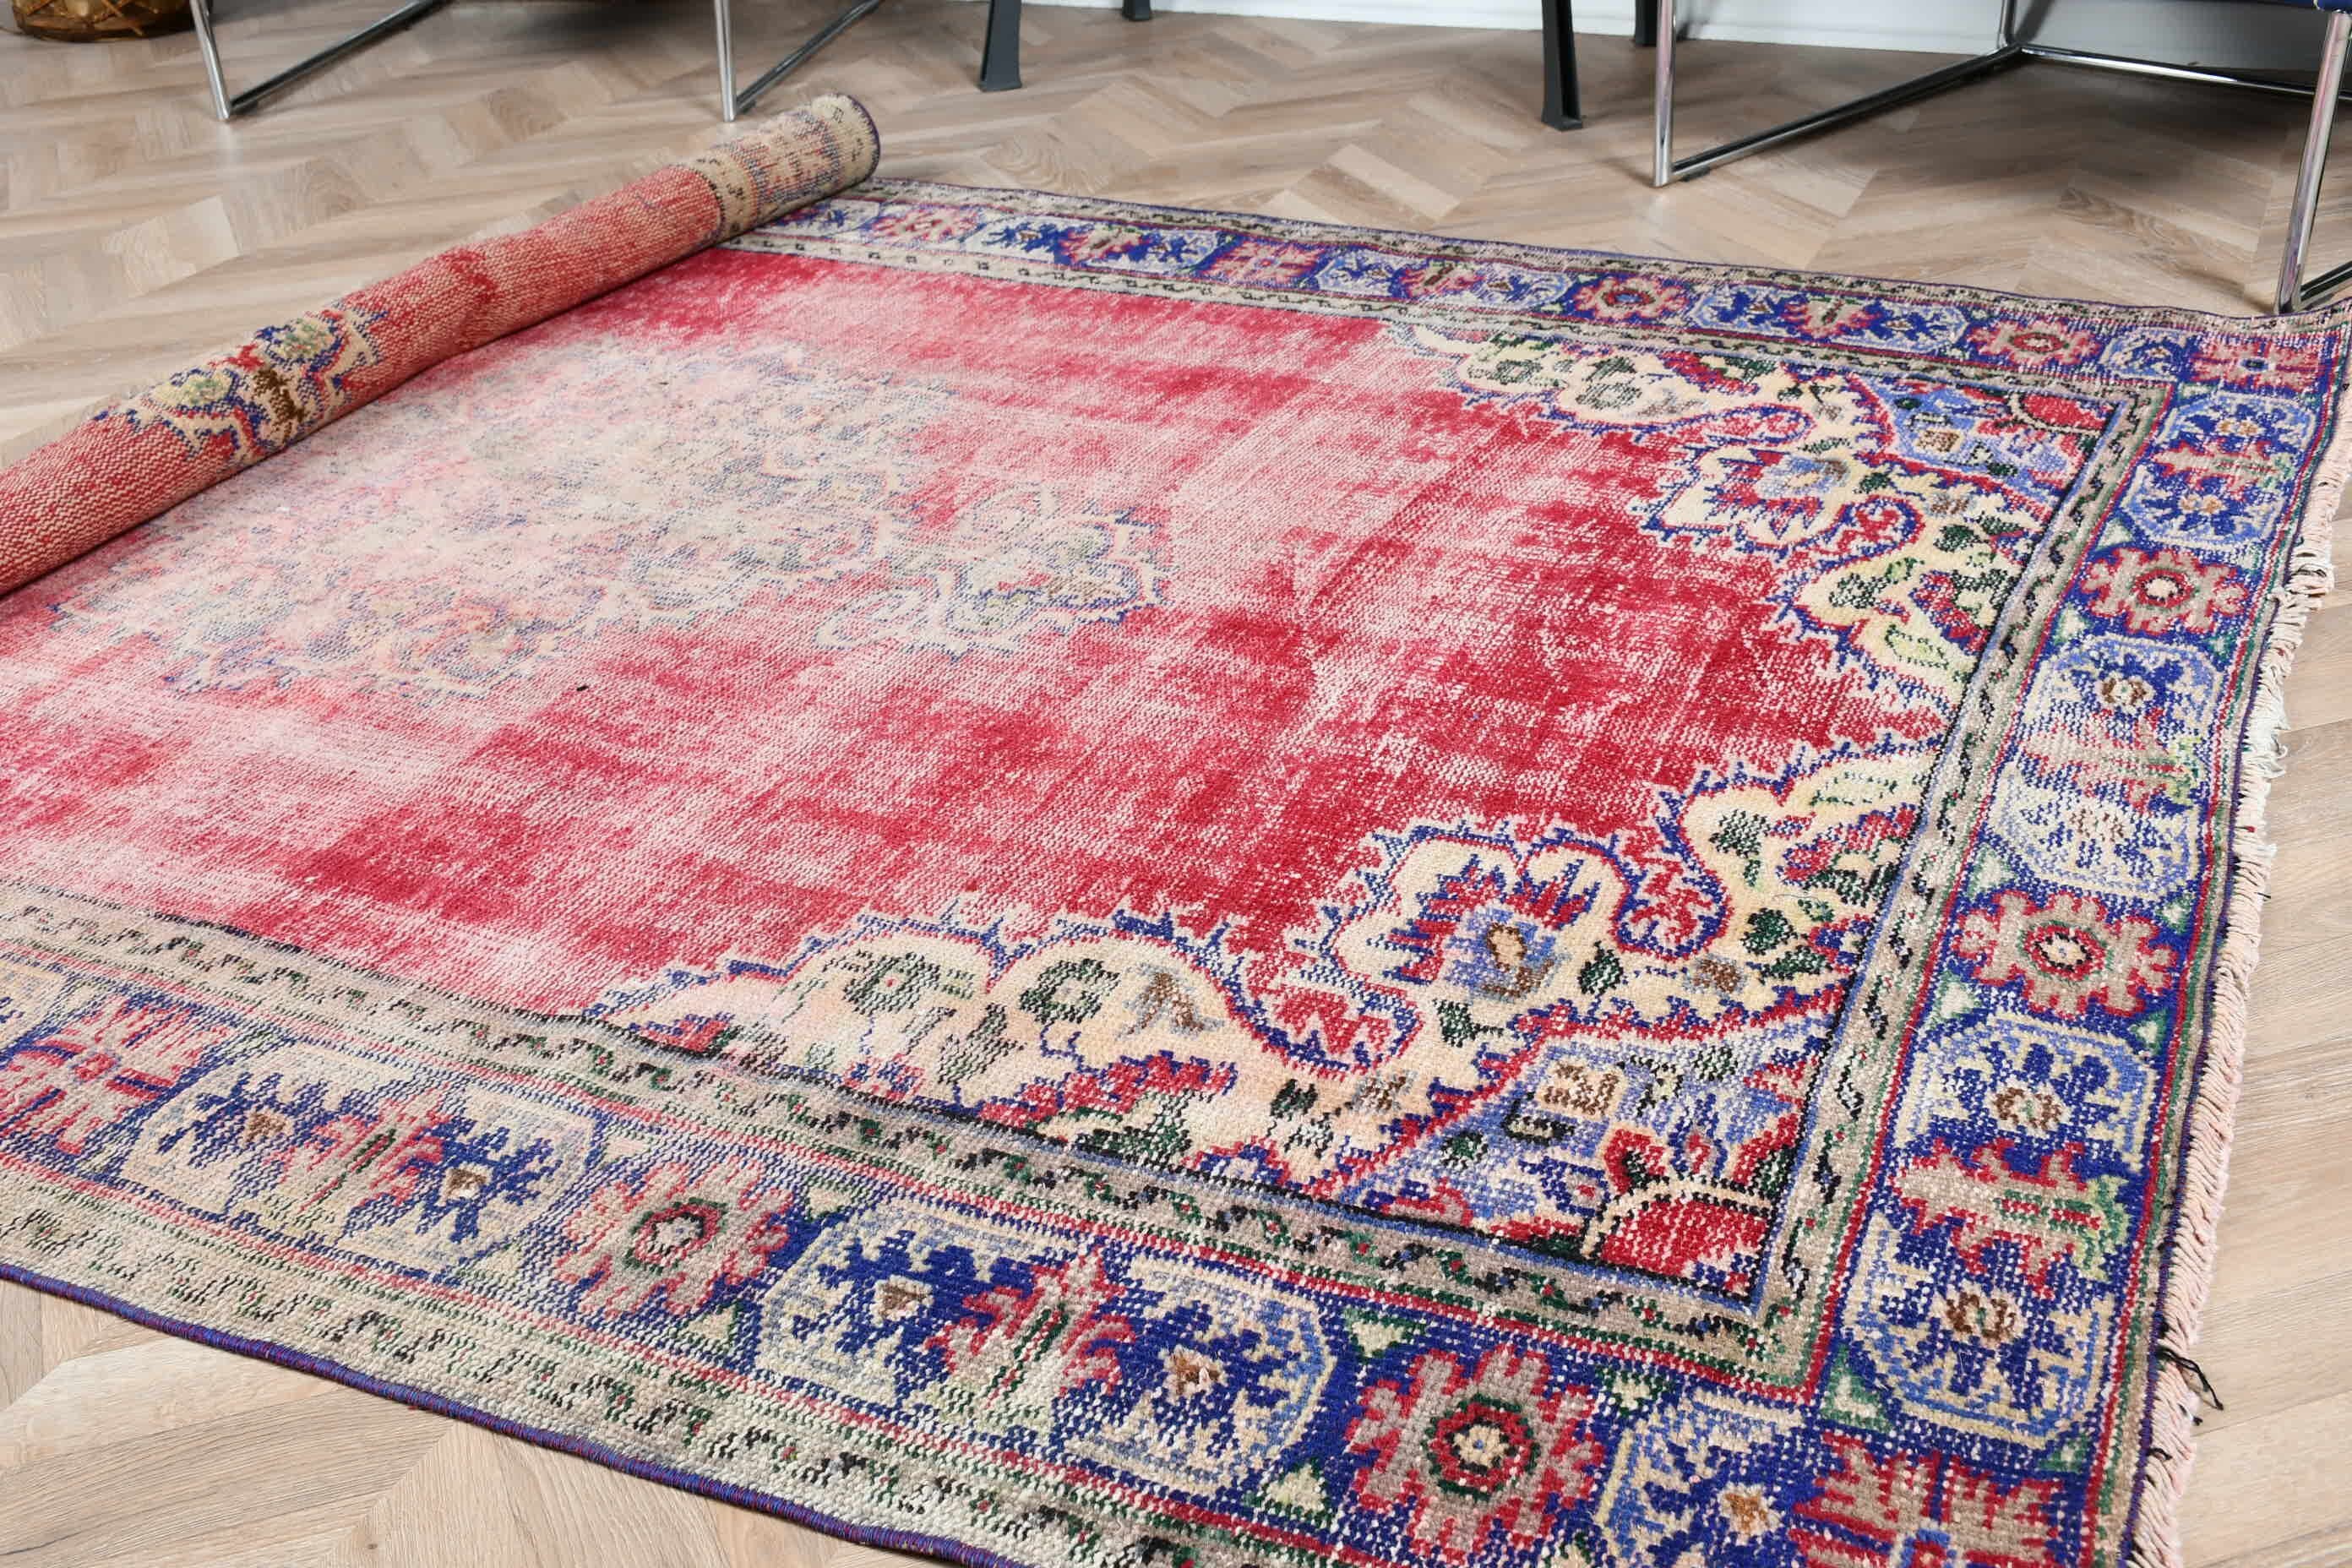 Anatolian Rug, Living Room Rugs, Vintage Rug, Red Cool Rug, Cool Rugs, Turkish Rug, Large Wool Rug Rugs, Bedroom Rug, 5.6x8.2 ft Large Rugs